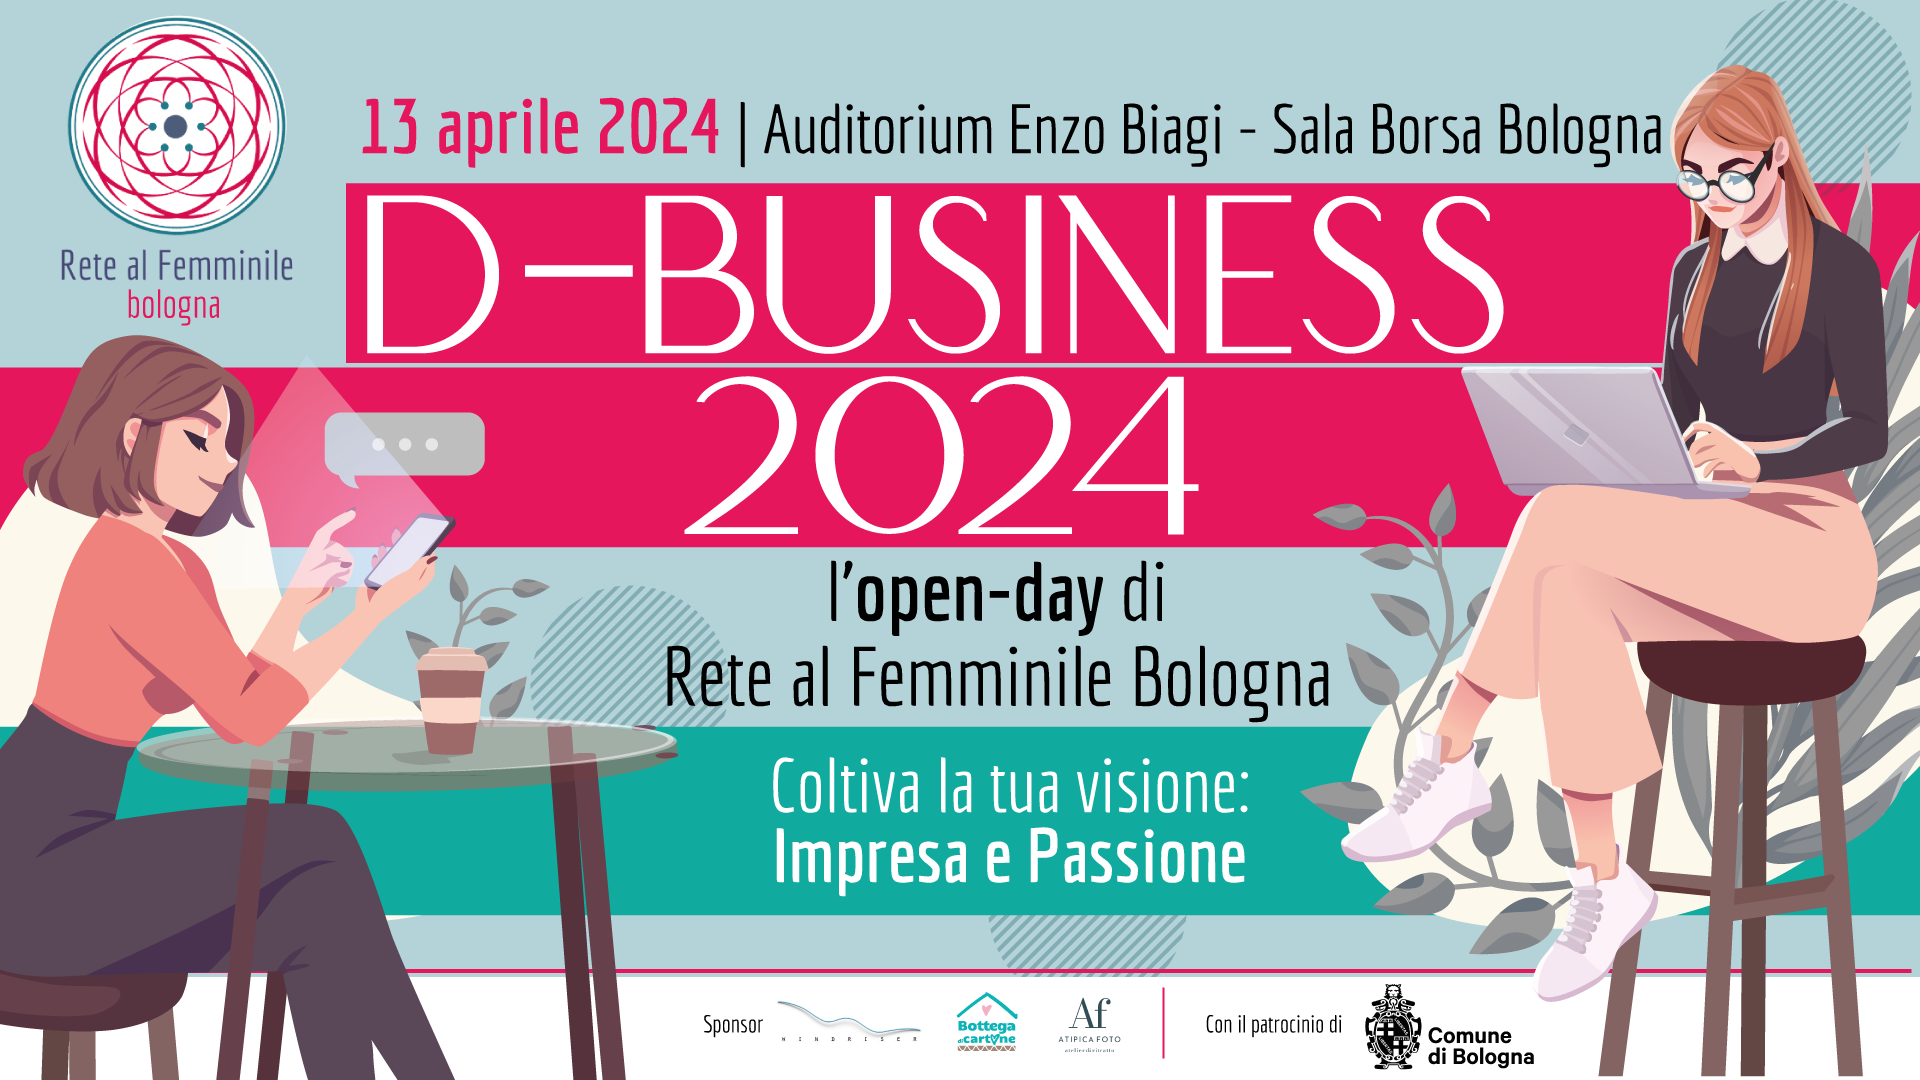 D-Business 2024: l’open-day di Rete al Femminile Bologna